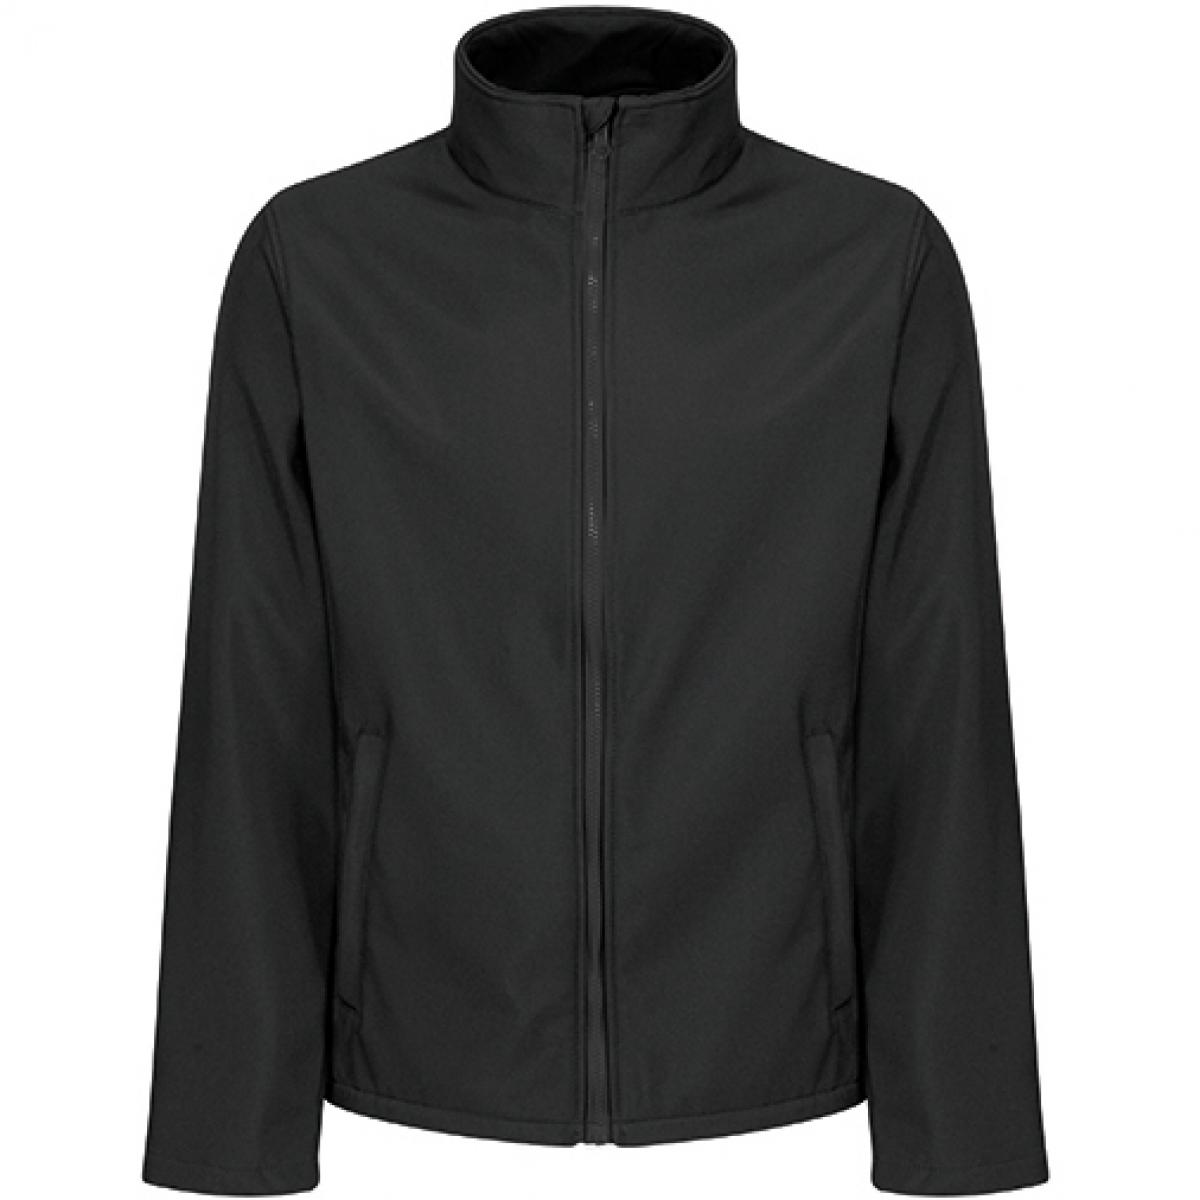 Hersteller: Regatta Professional Herstellernummer: TRA728 Artikelbezeichnung: Eco Ablaze Softshell Jacke Farbe: Black/Black